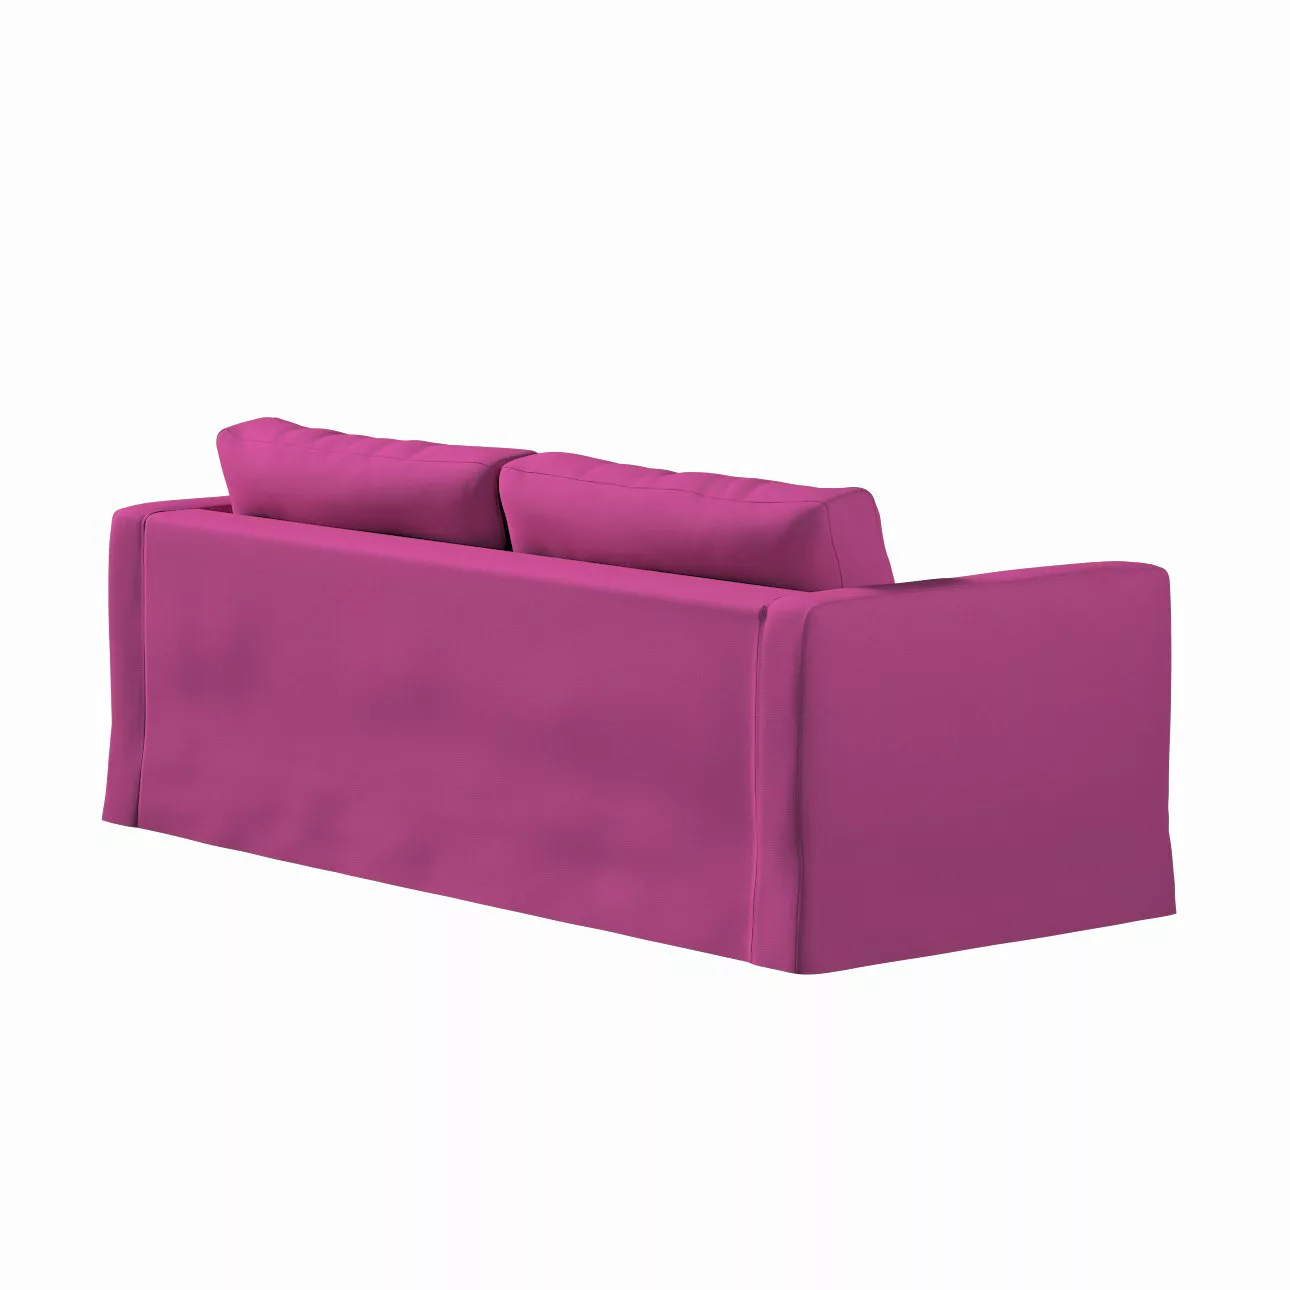 Bezug für Karlstad 3-Sitzer Sofa nicht ausklappbar, lang, amarant, Bezug fü günstig online kaufen